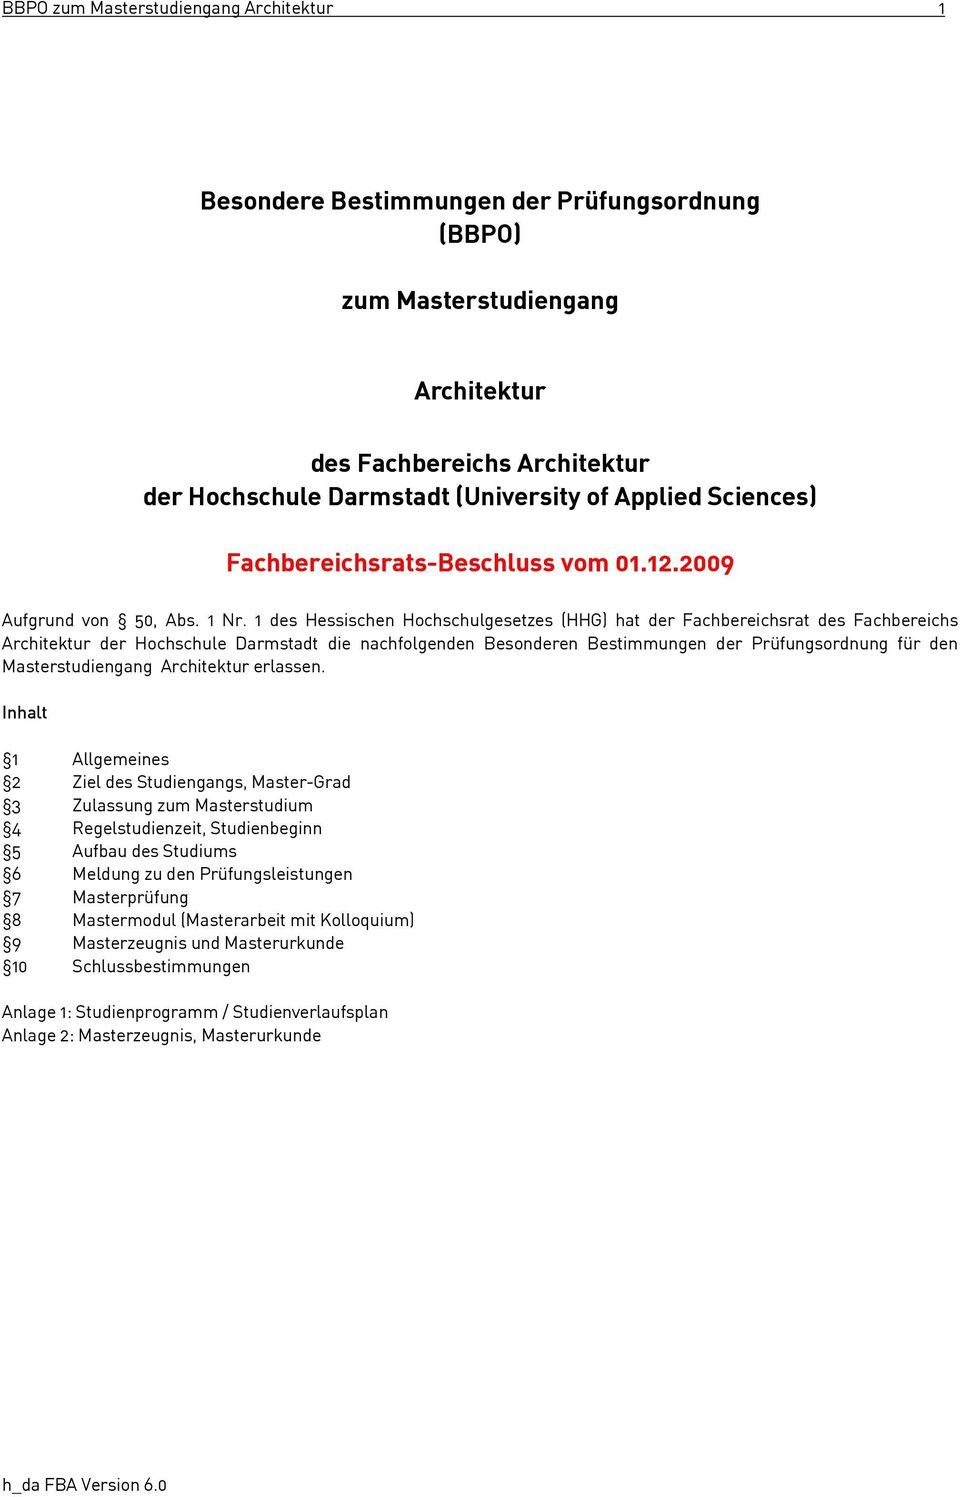 1 des Hessischen Hochschulgesetzes (HHG) hat der Fachbereichsrat des Fachbereichs Architektur der Hochschule Darmstadt die nachfolgenden Besonderen Bestimmungen der Prüfungsordnung für den